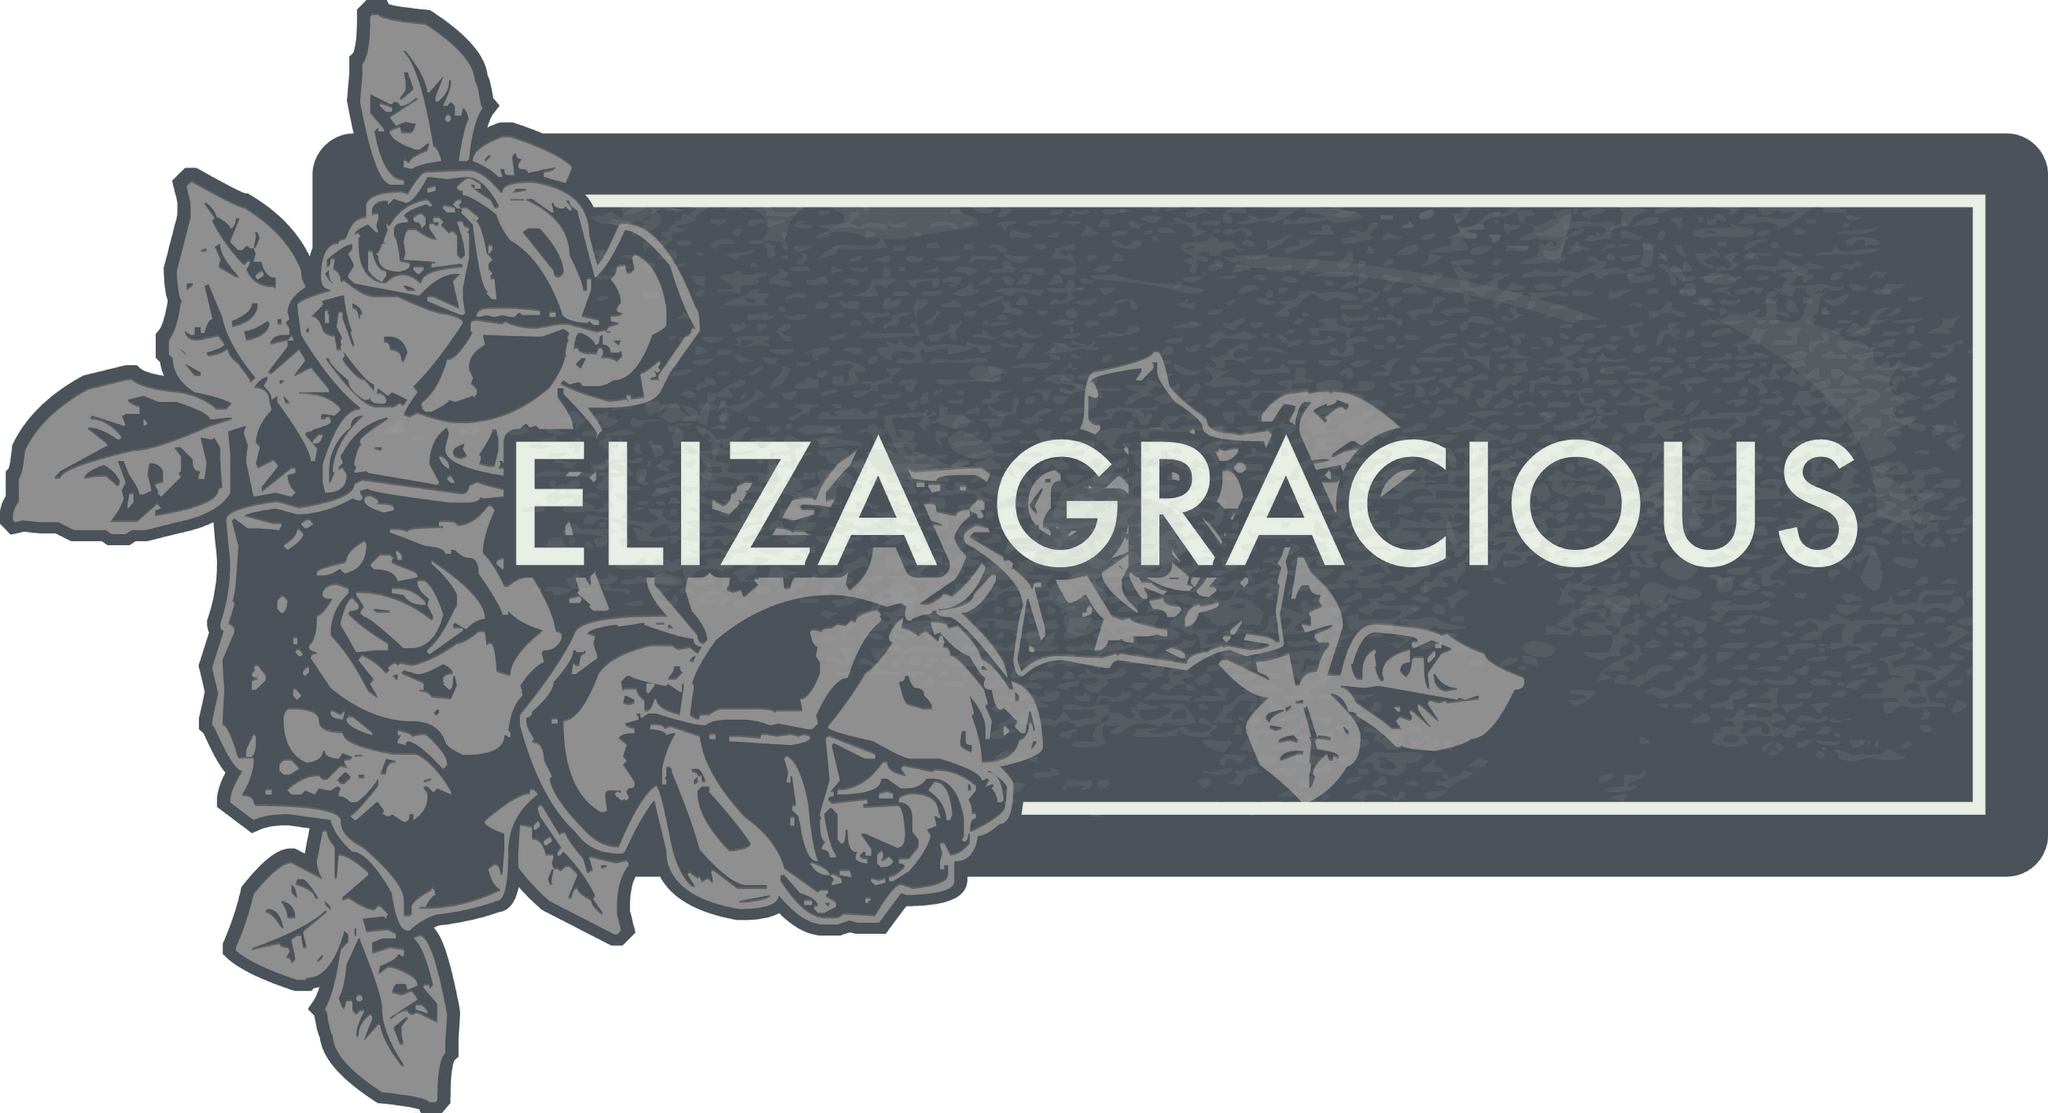 Eliza Gracious Ltd